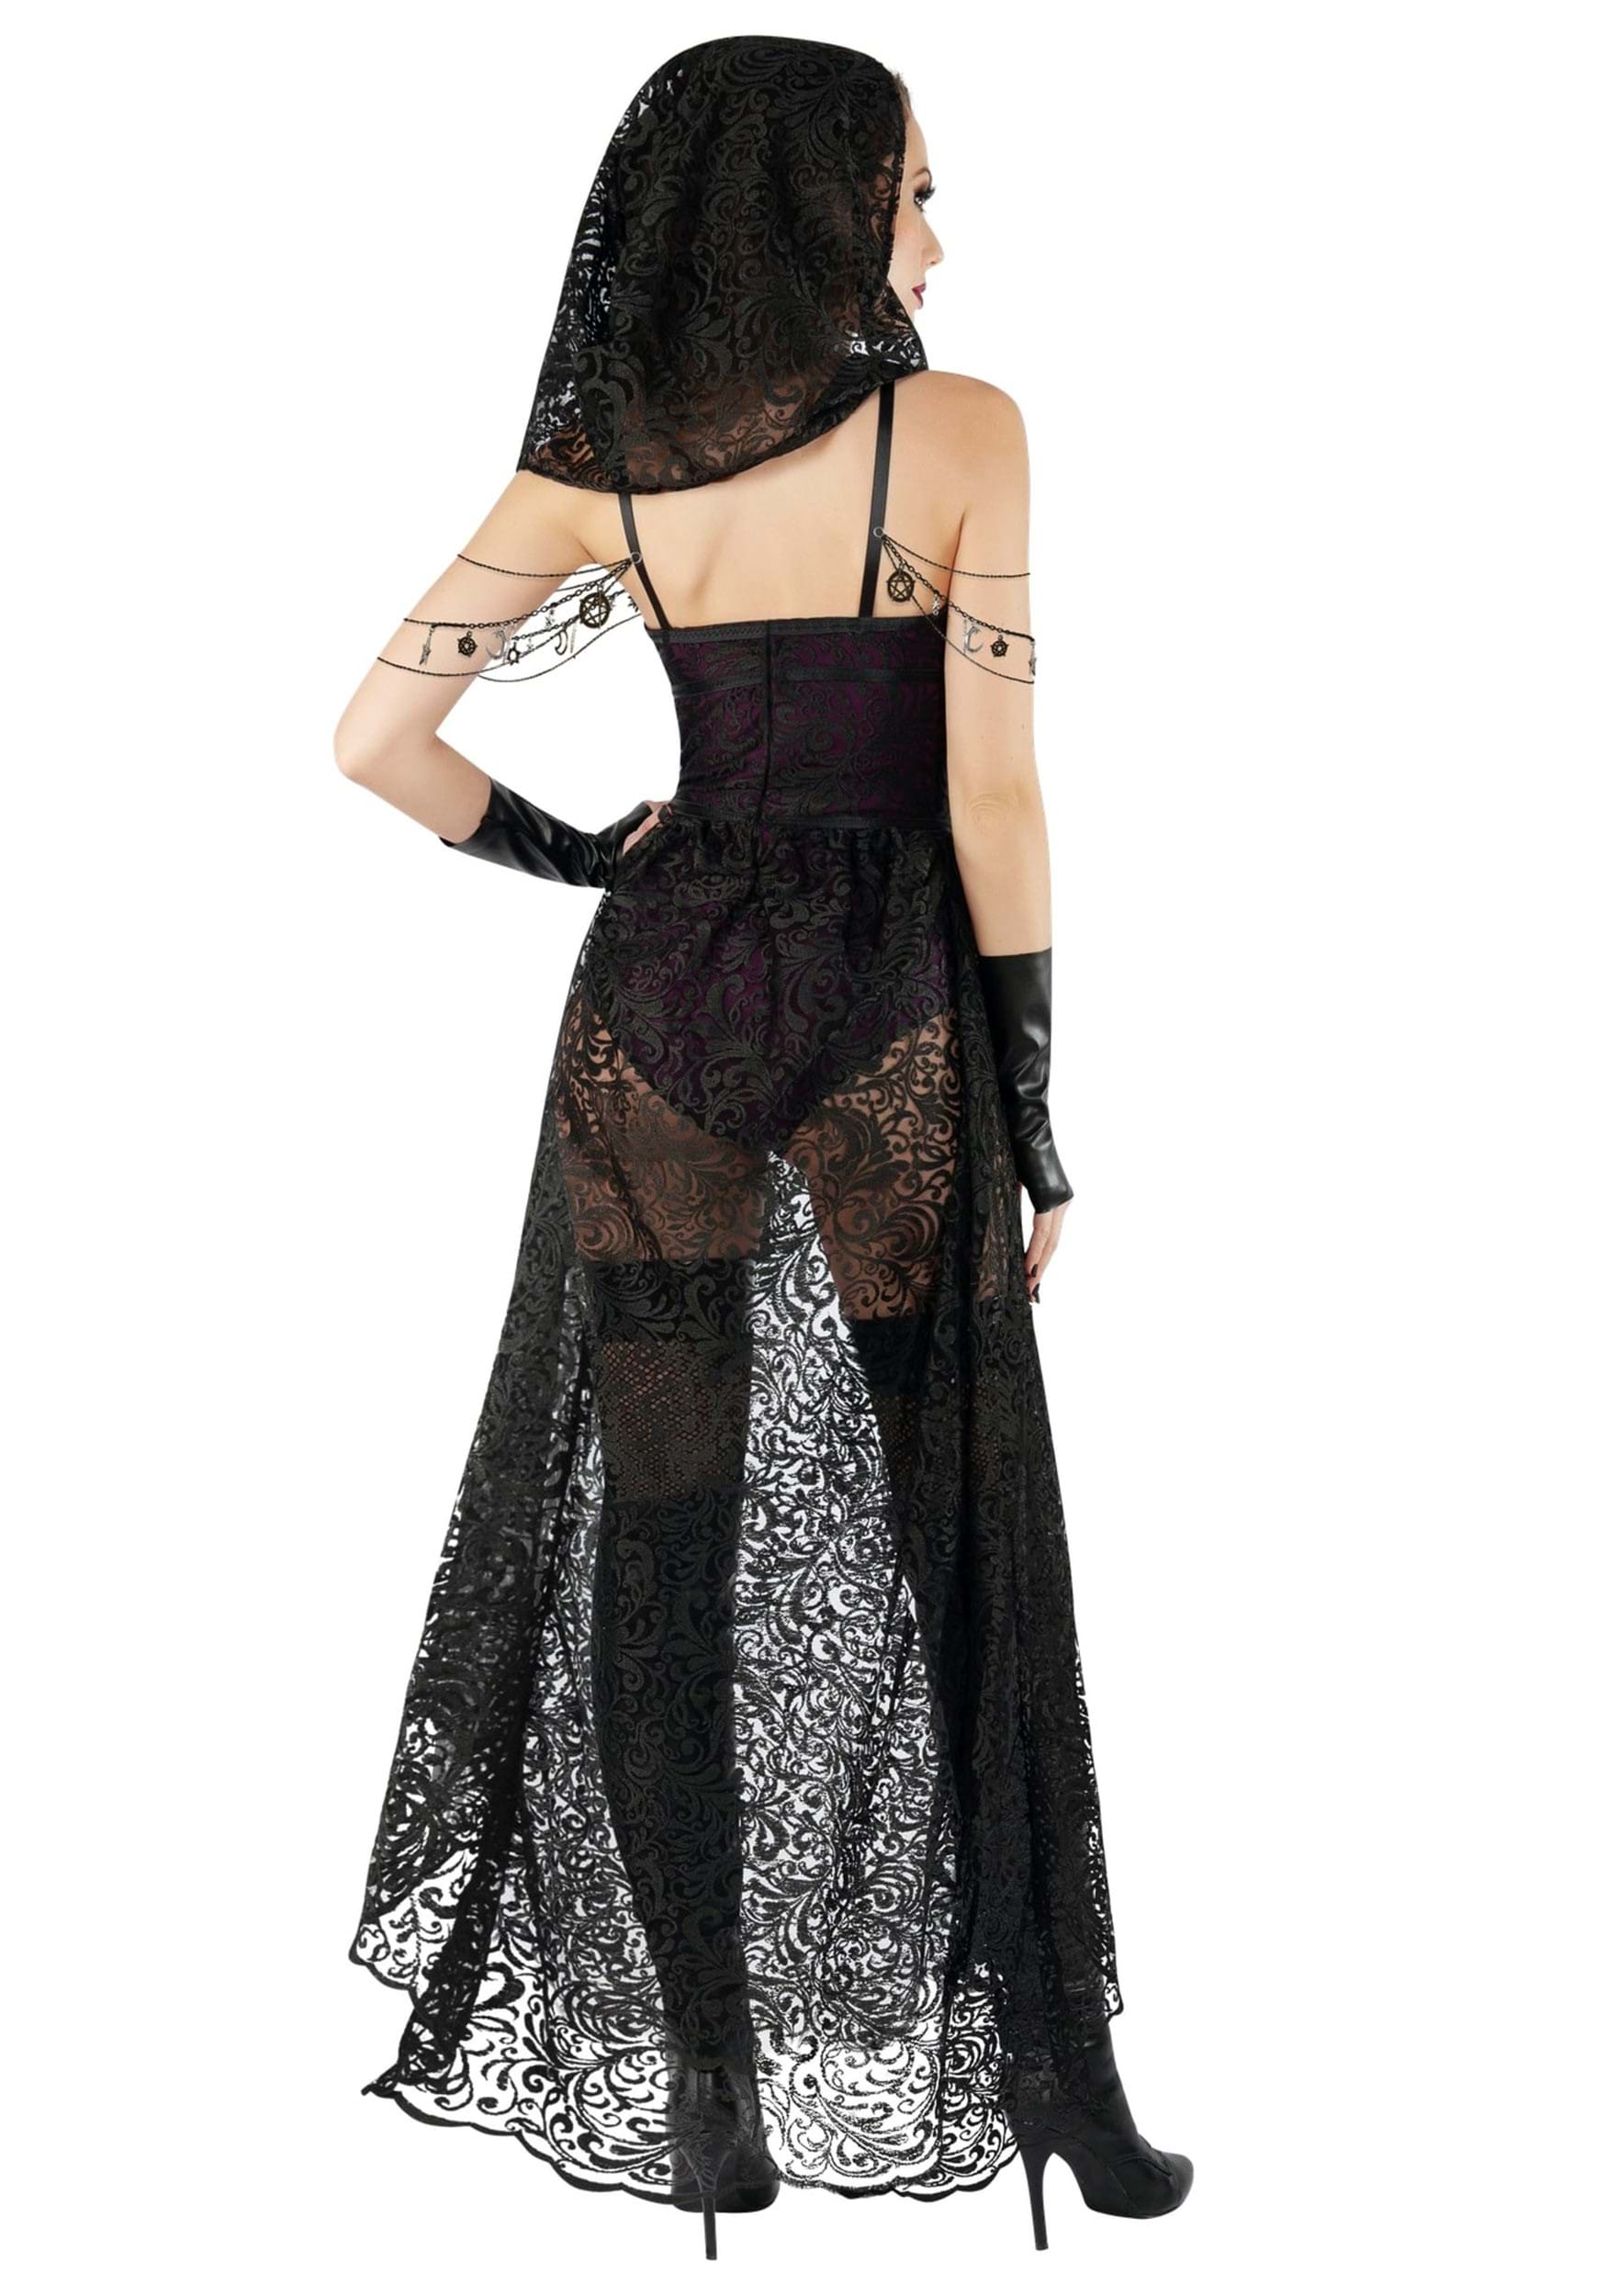 Sexy Women's Dark Priestess Costume